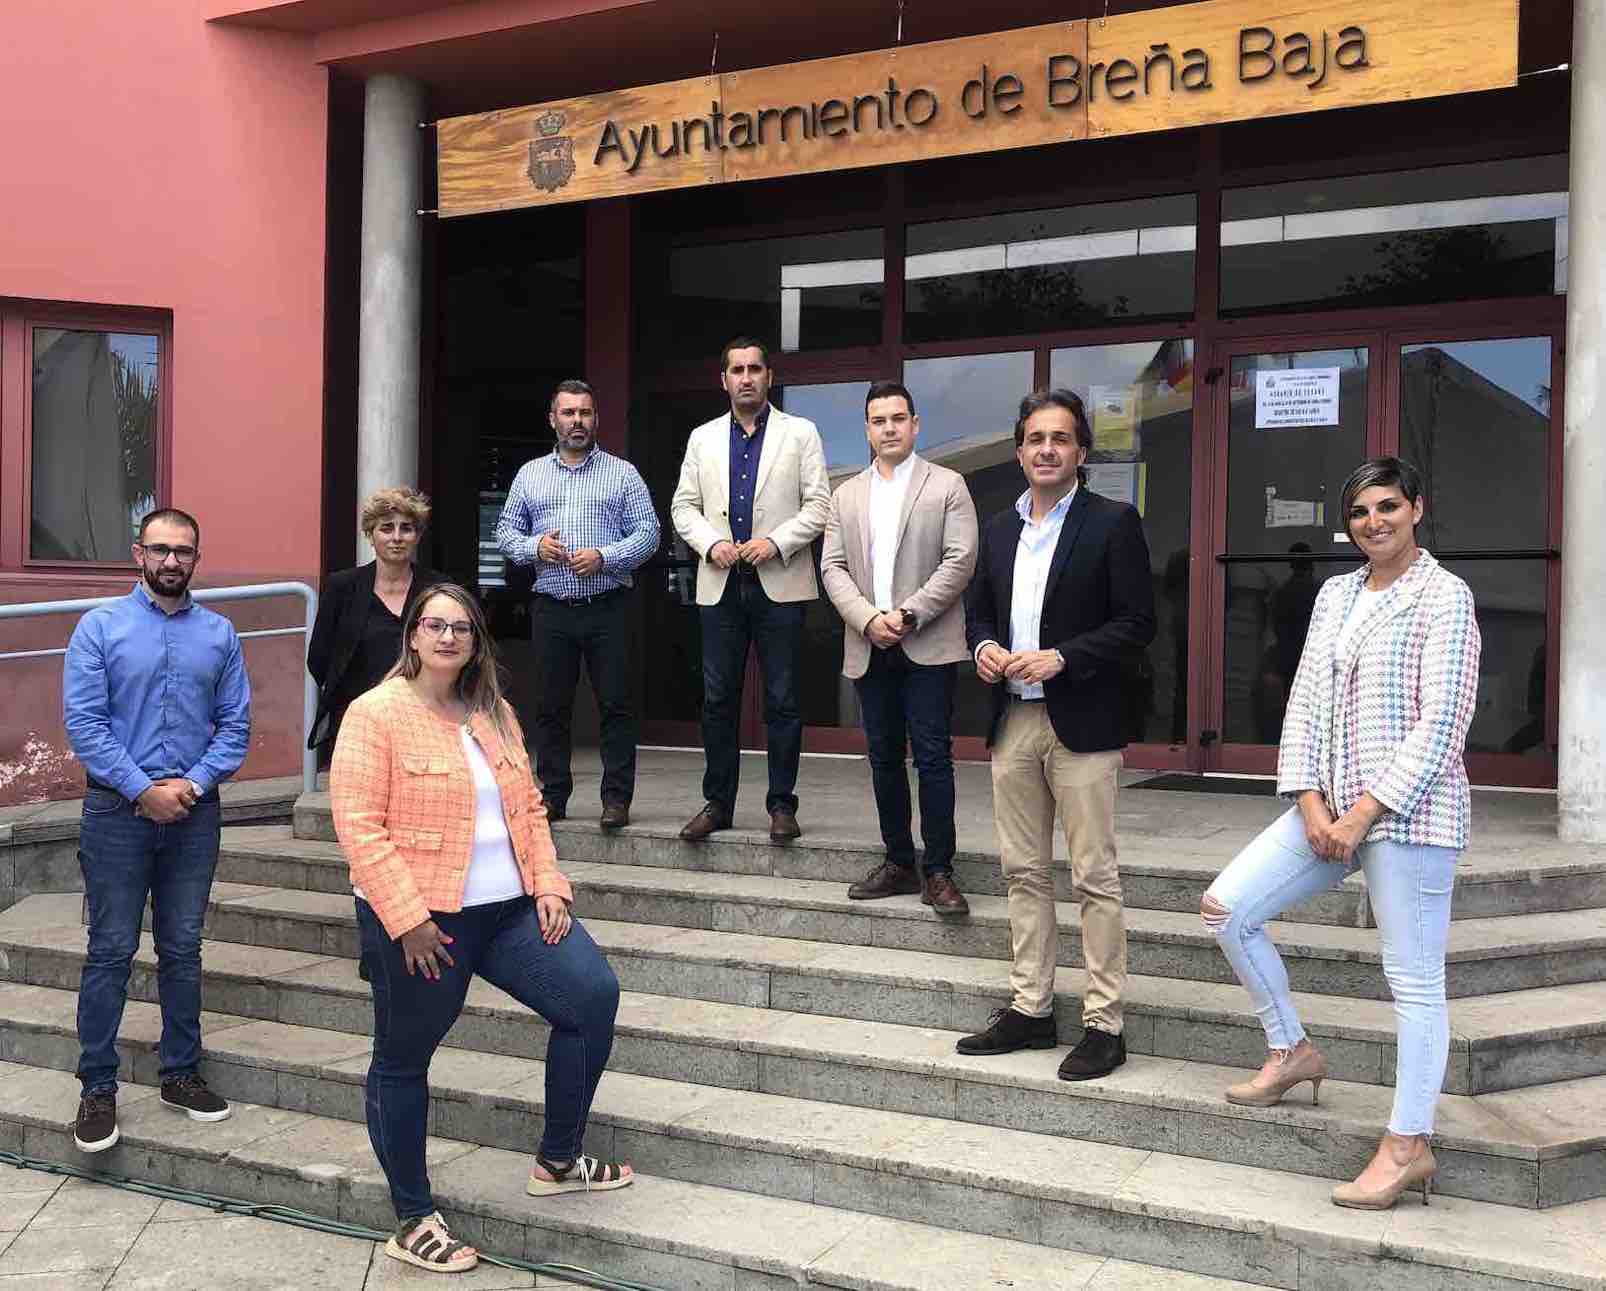 El Ayuntamiento de Breña Baja obtiene la máxima nota (10) en el Índice de Transparencia y se consolida como un referente en la isla y Canarias